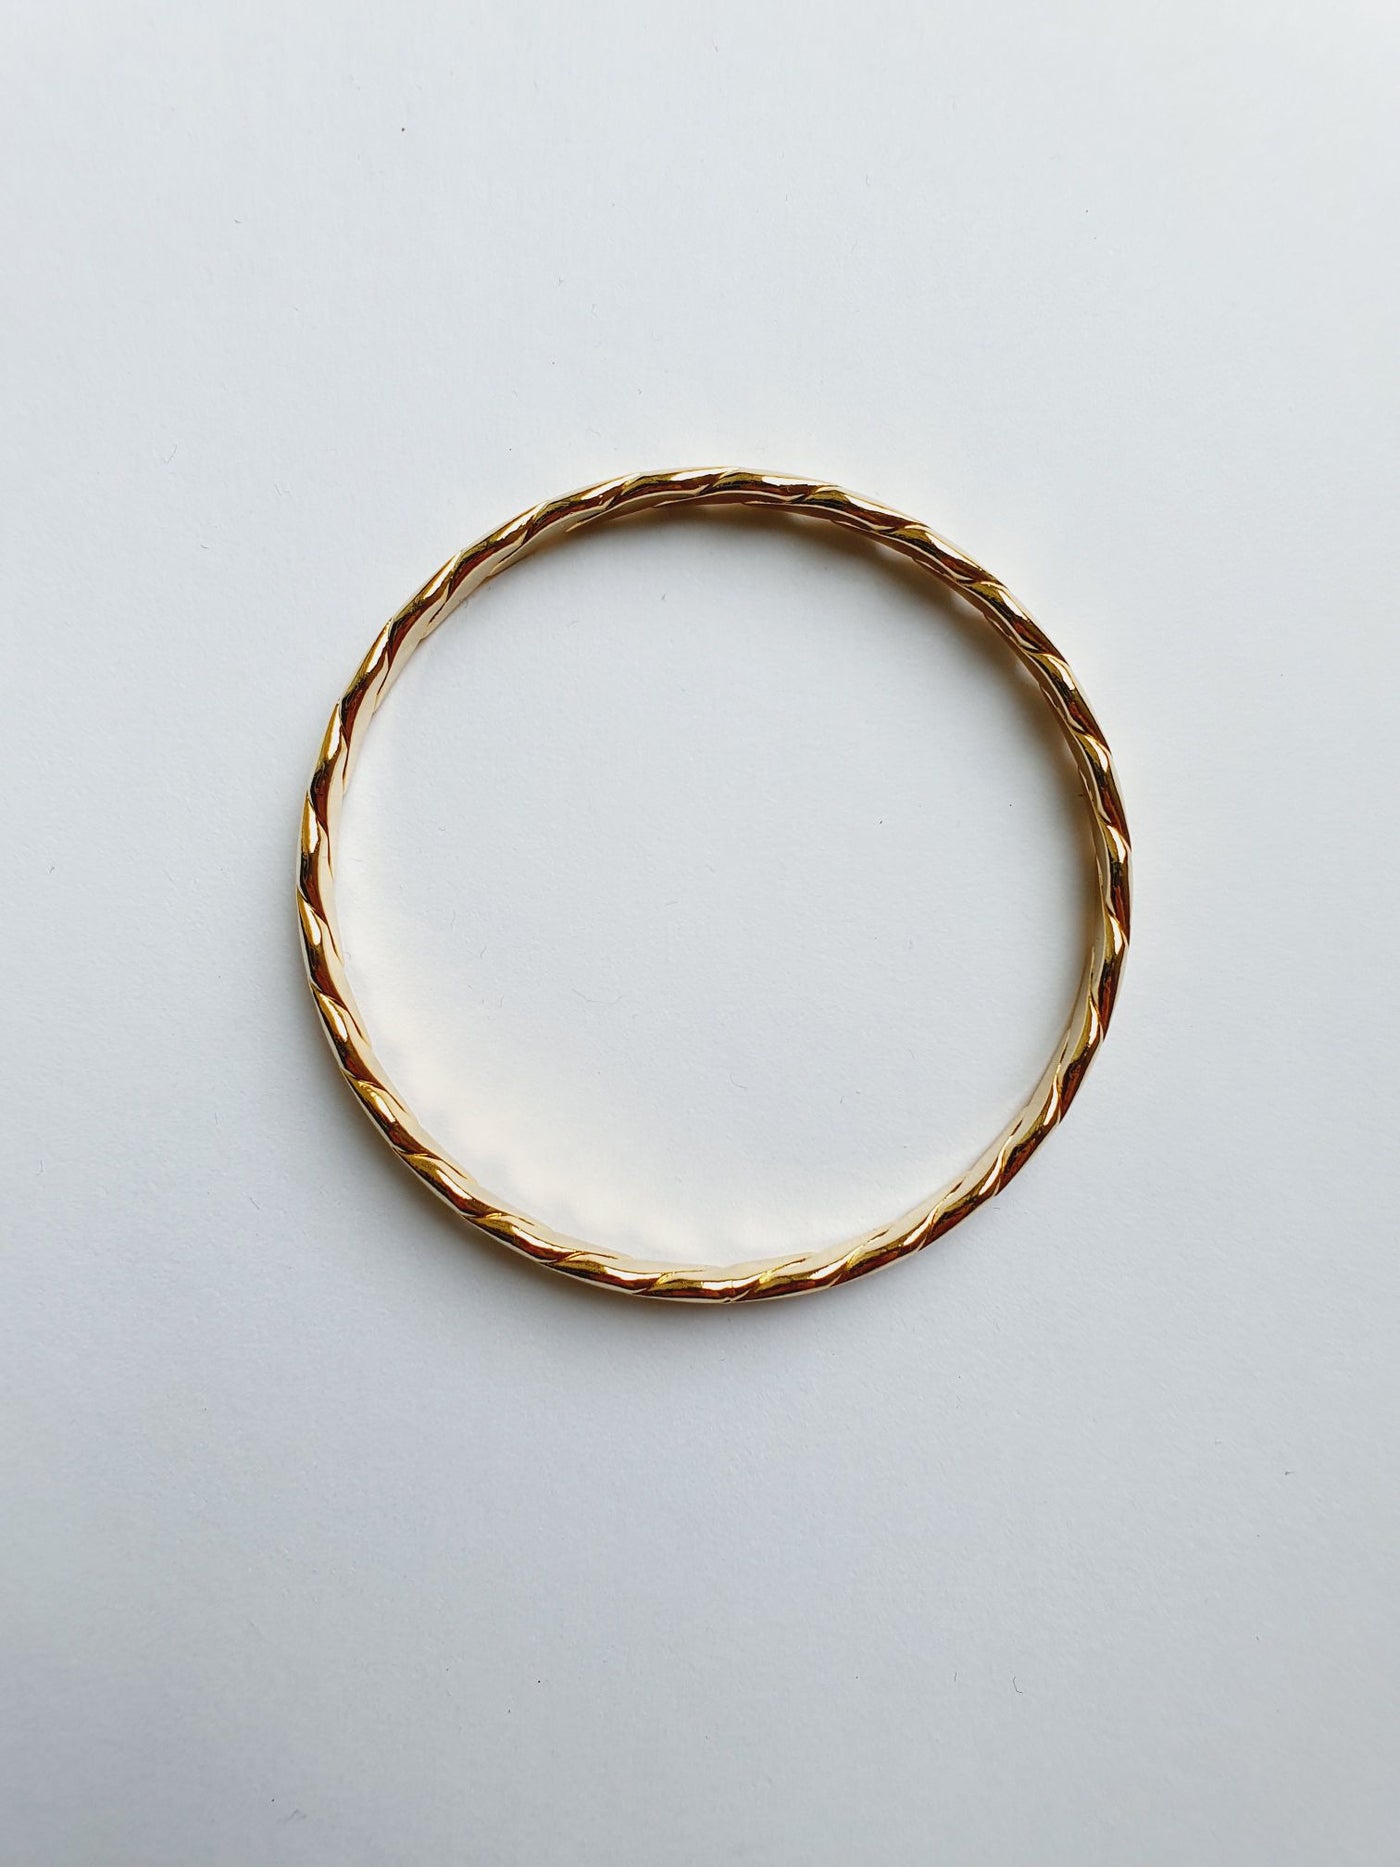 Vintage Gold Plated Twist Bangle Bracelet